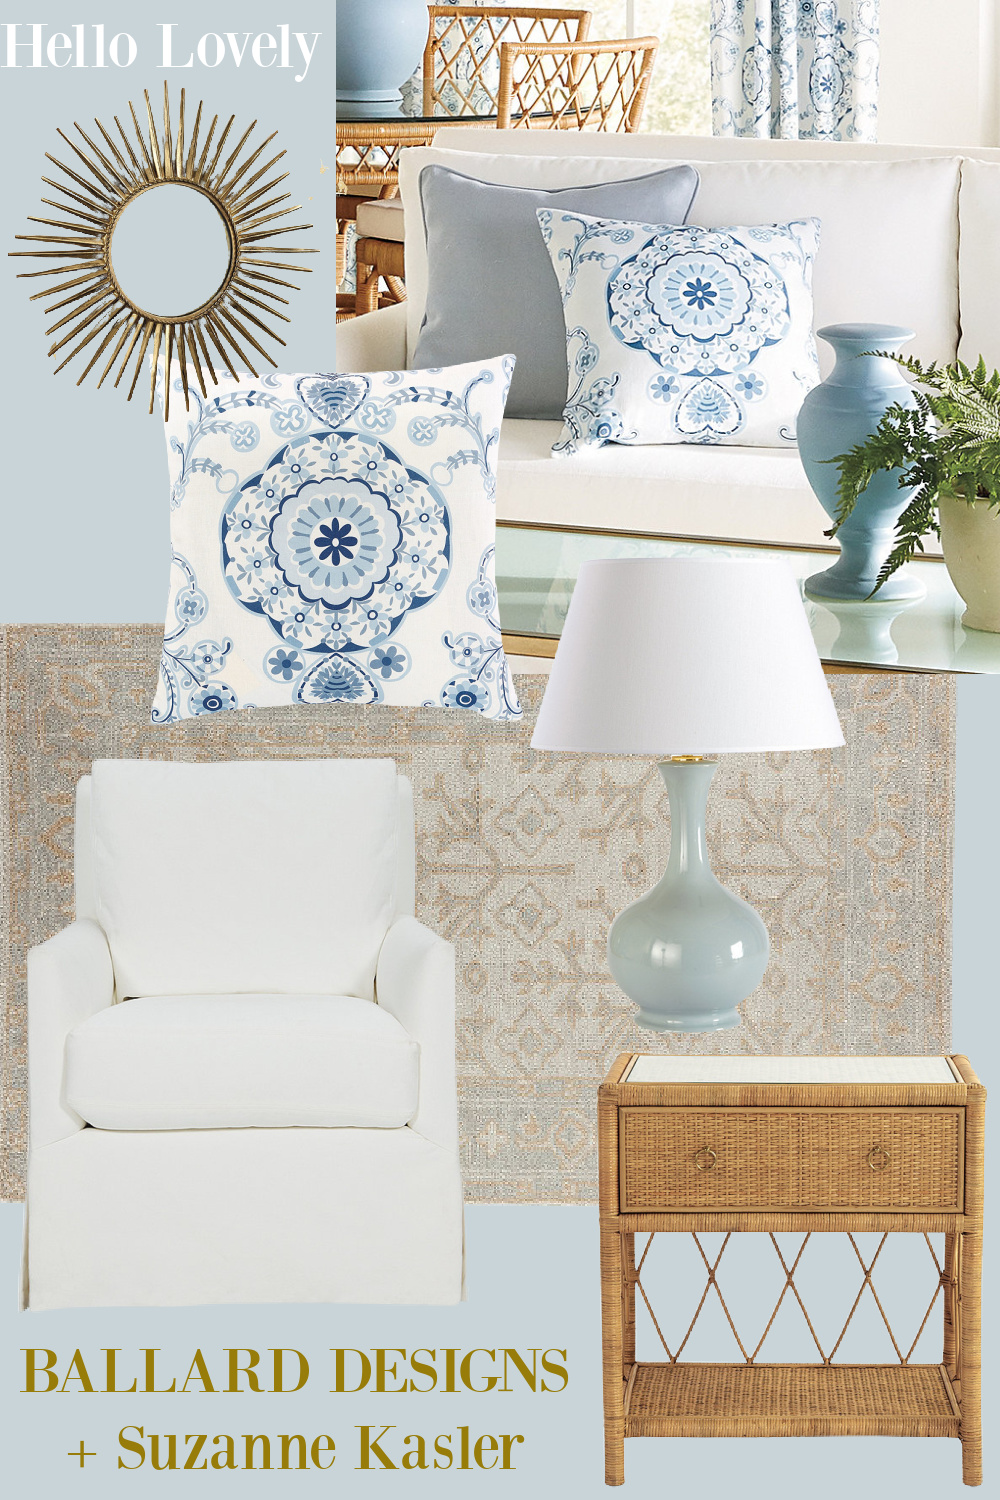 Ballard Designs + Suzanne Kasler furniture and decor. #suzannekasler #getthelook #classicinteriordesign